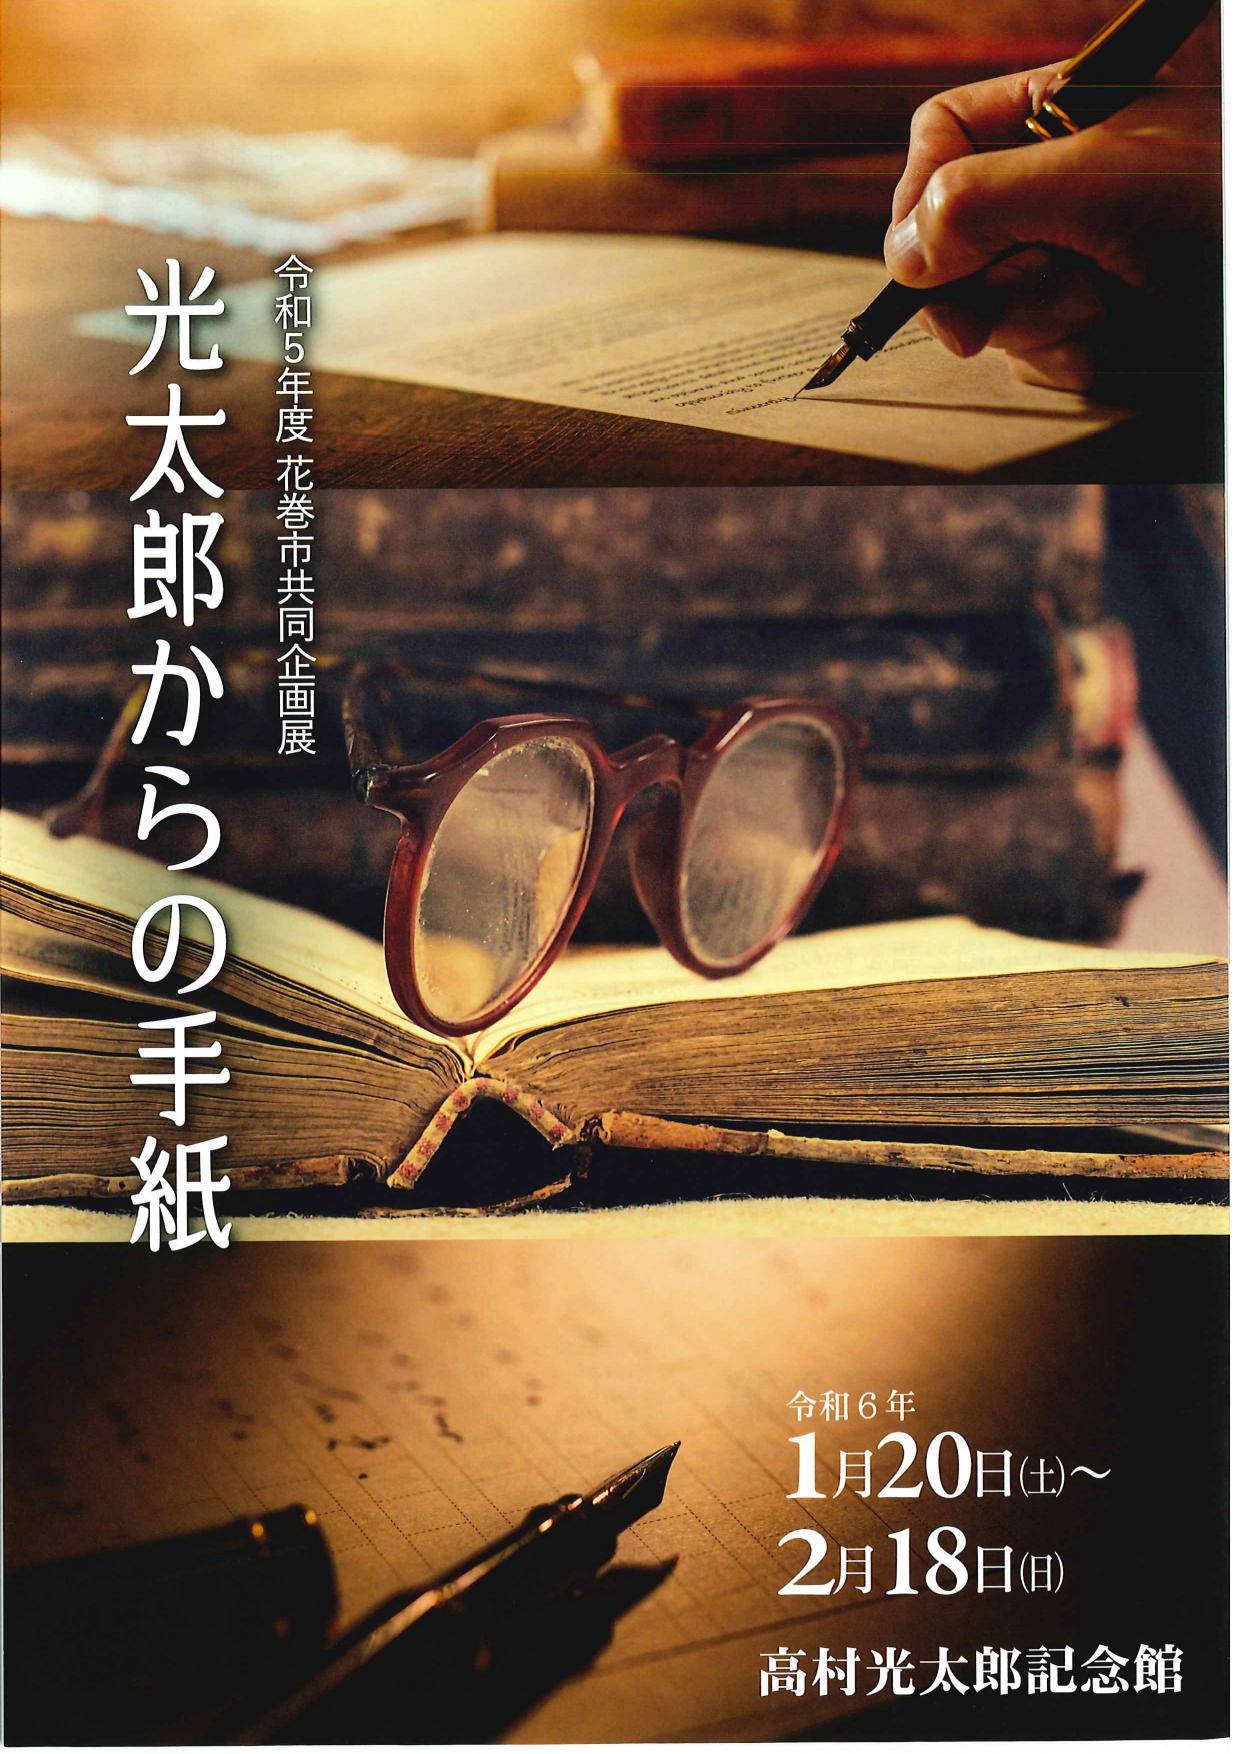 【高村光太郎記念館】共同企画展「光太郎からの手紙」